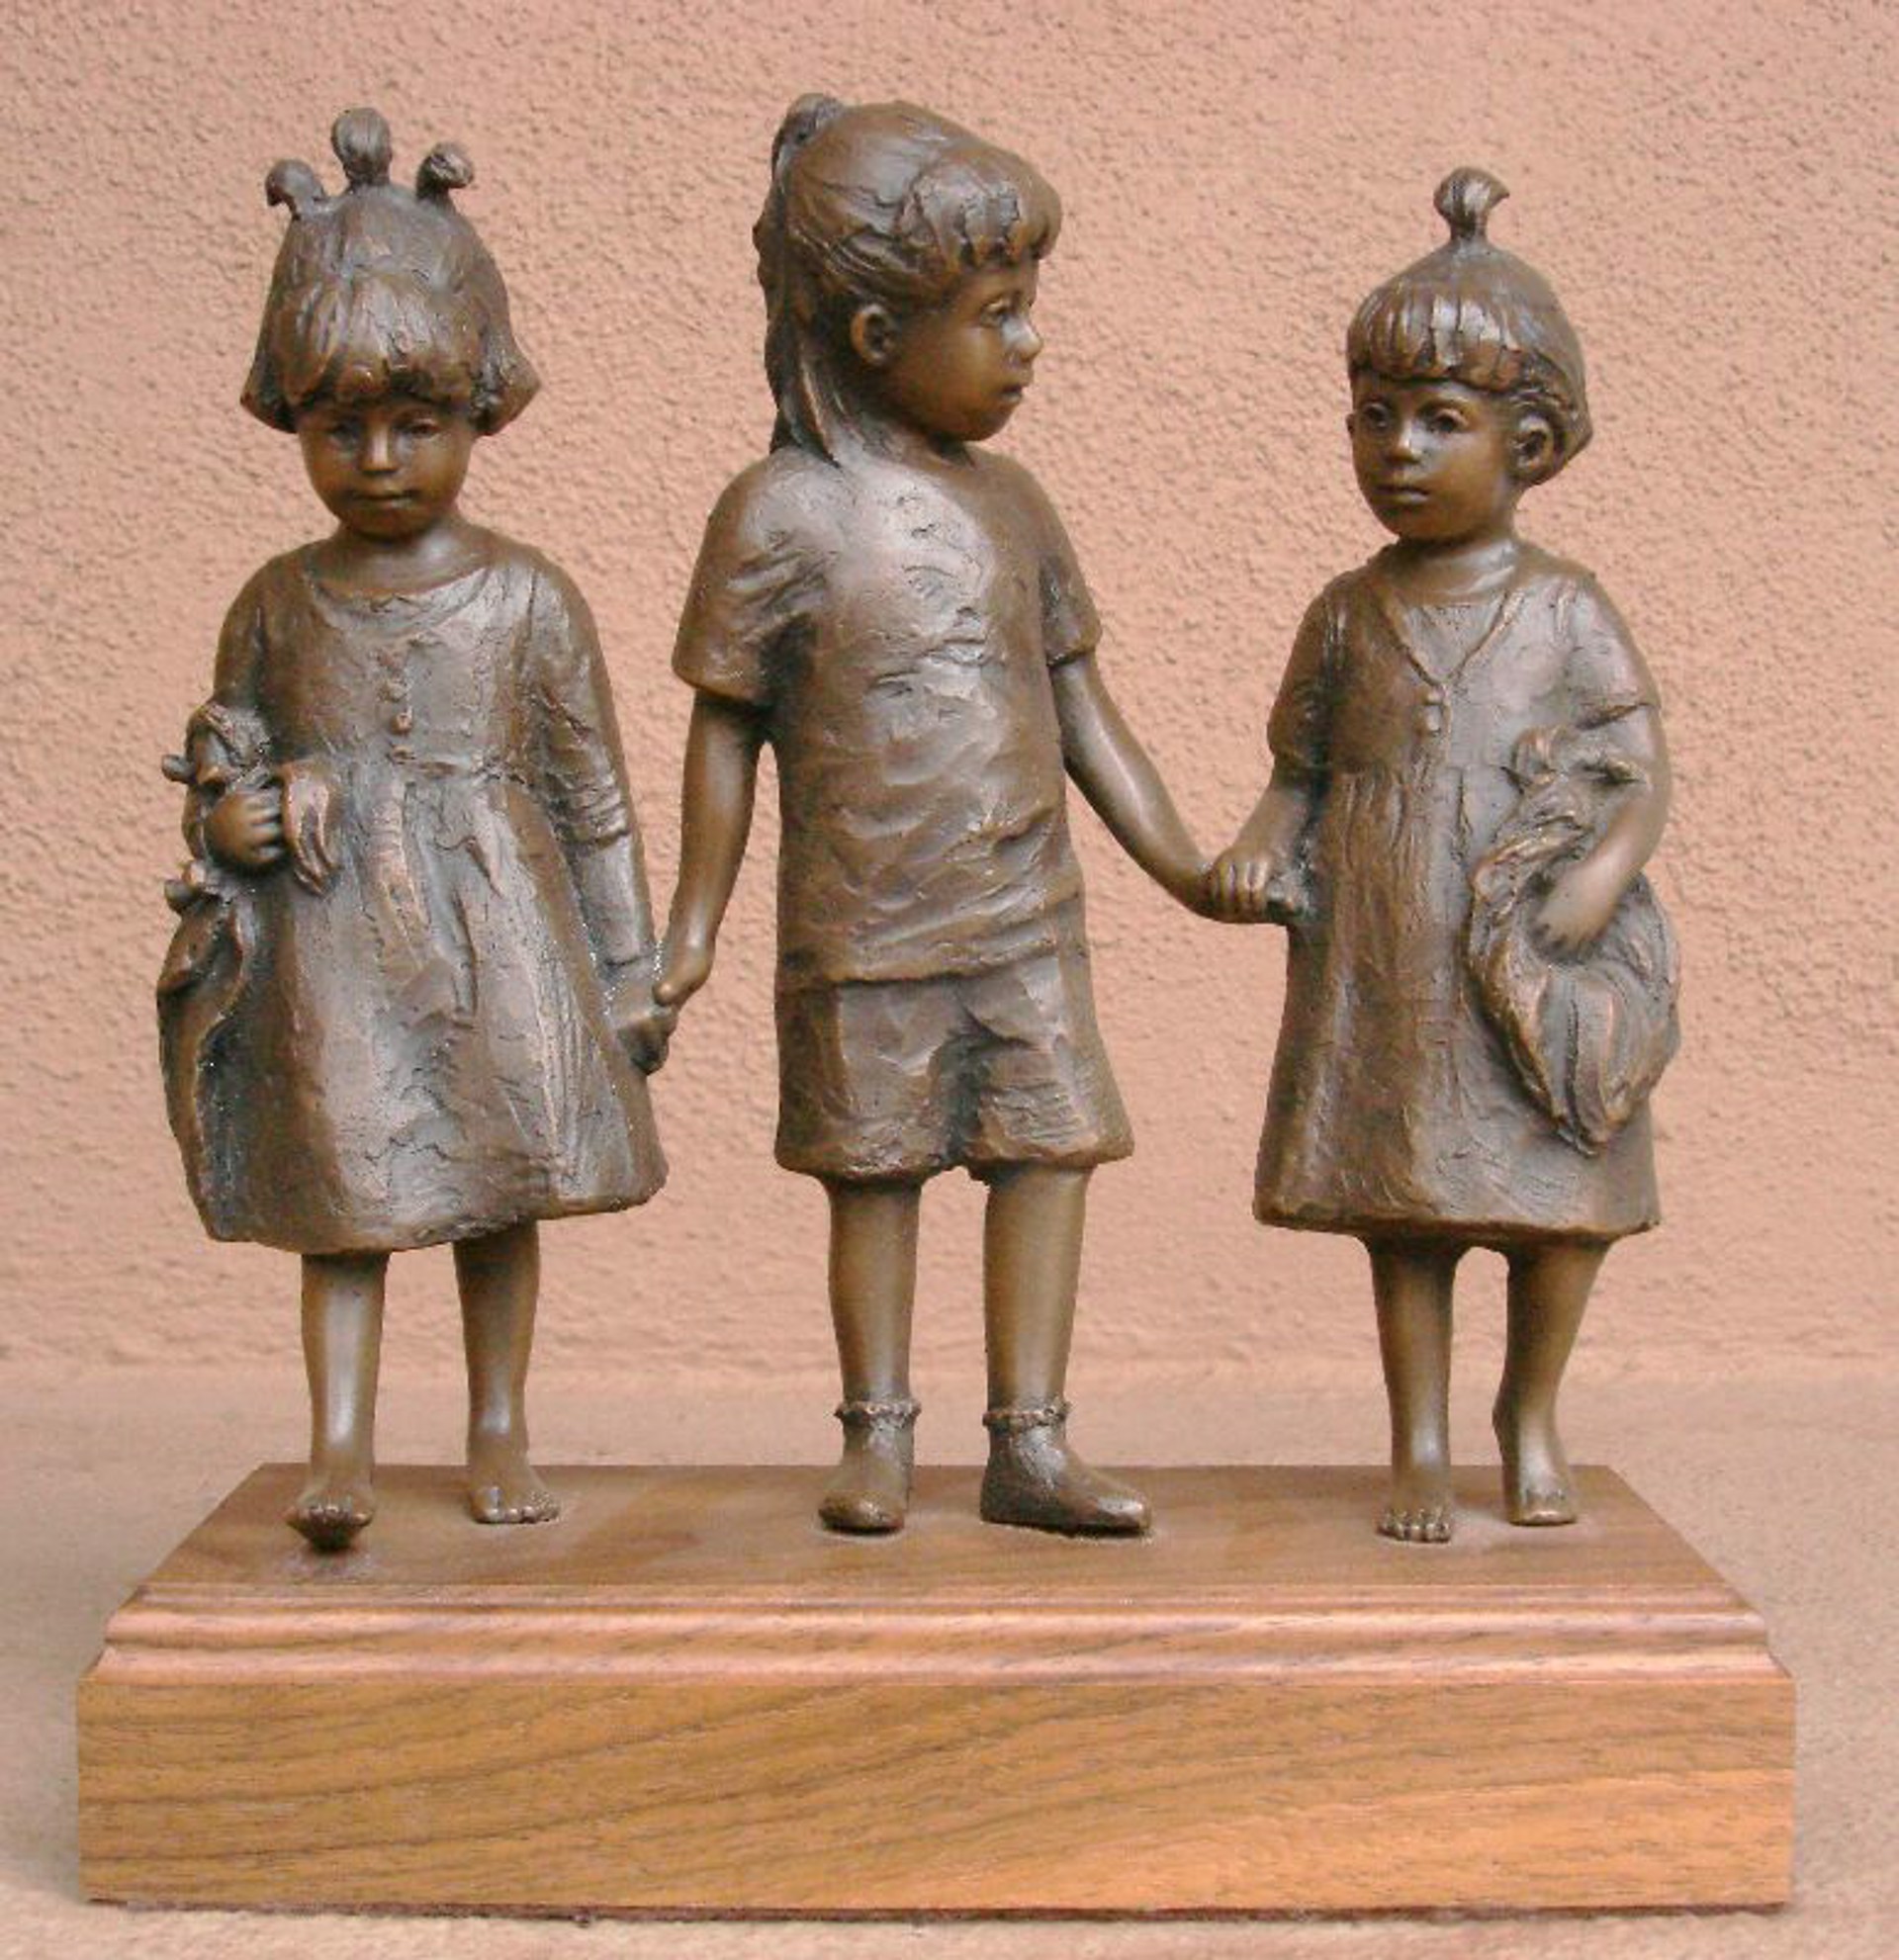 Playmates (maquette) by L'Deane Trueblood (sculptor)